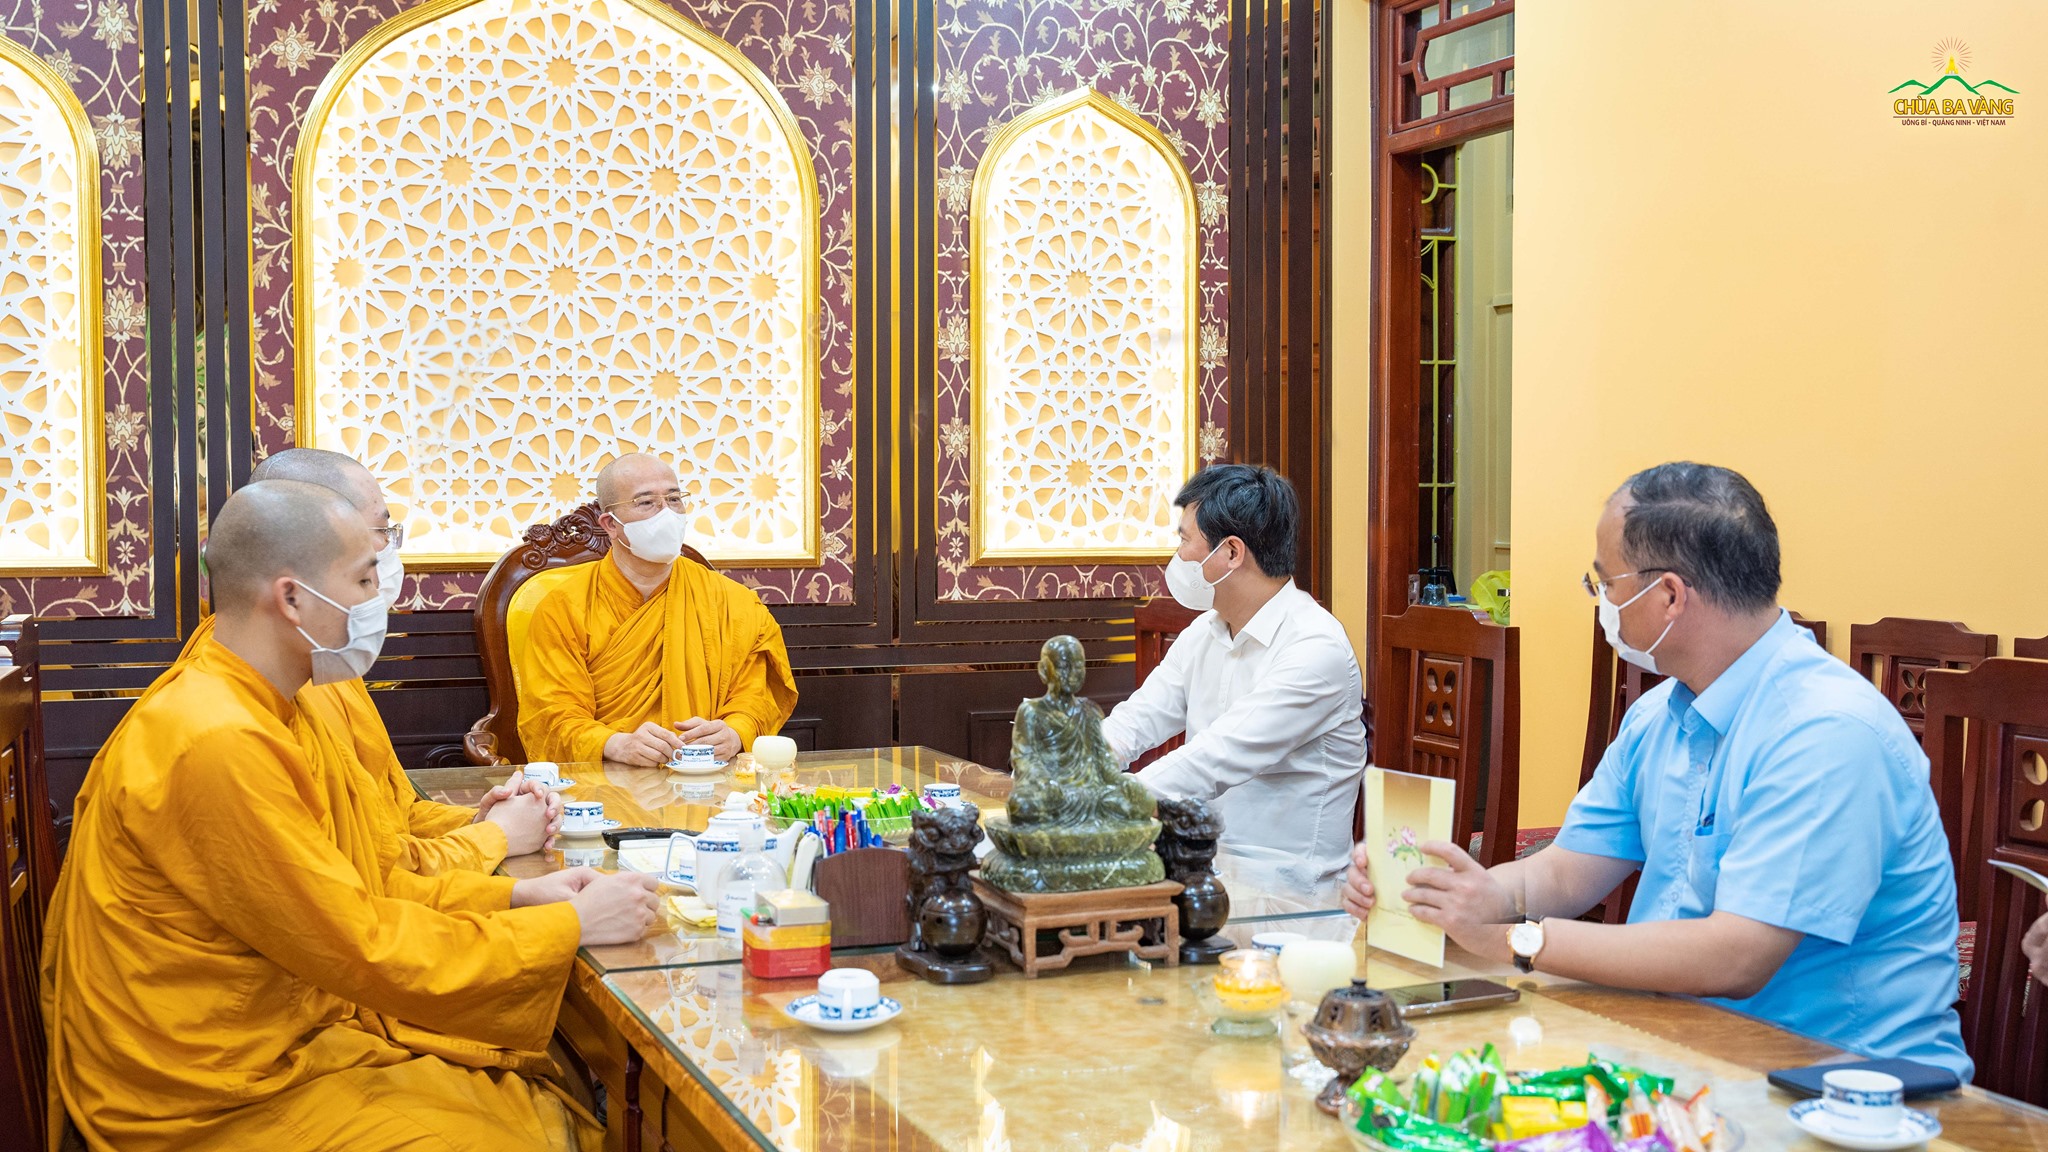 Chiều nay - ngày 06/11/2021, Sư Phụ Thích Trúc Thái Minh cùng đại diện chư Tăng đã tiếp đón đoàn Chủ tịch tỉnh Quảng Ninh đến thăm, làm việc về khu сáсh lу độc lập của chùa Ba Vàng